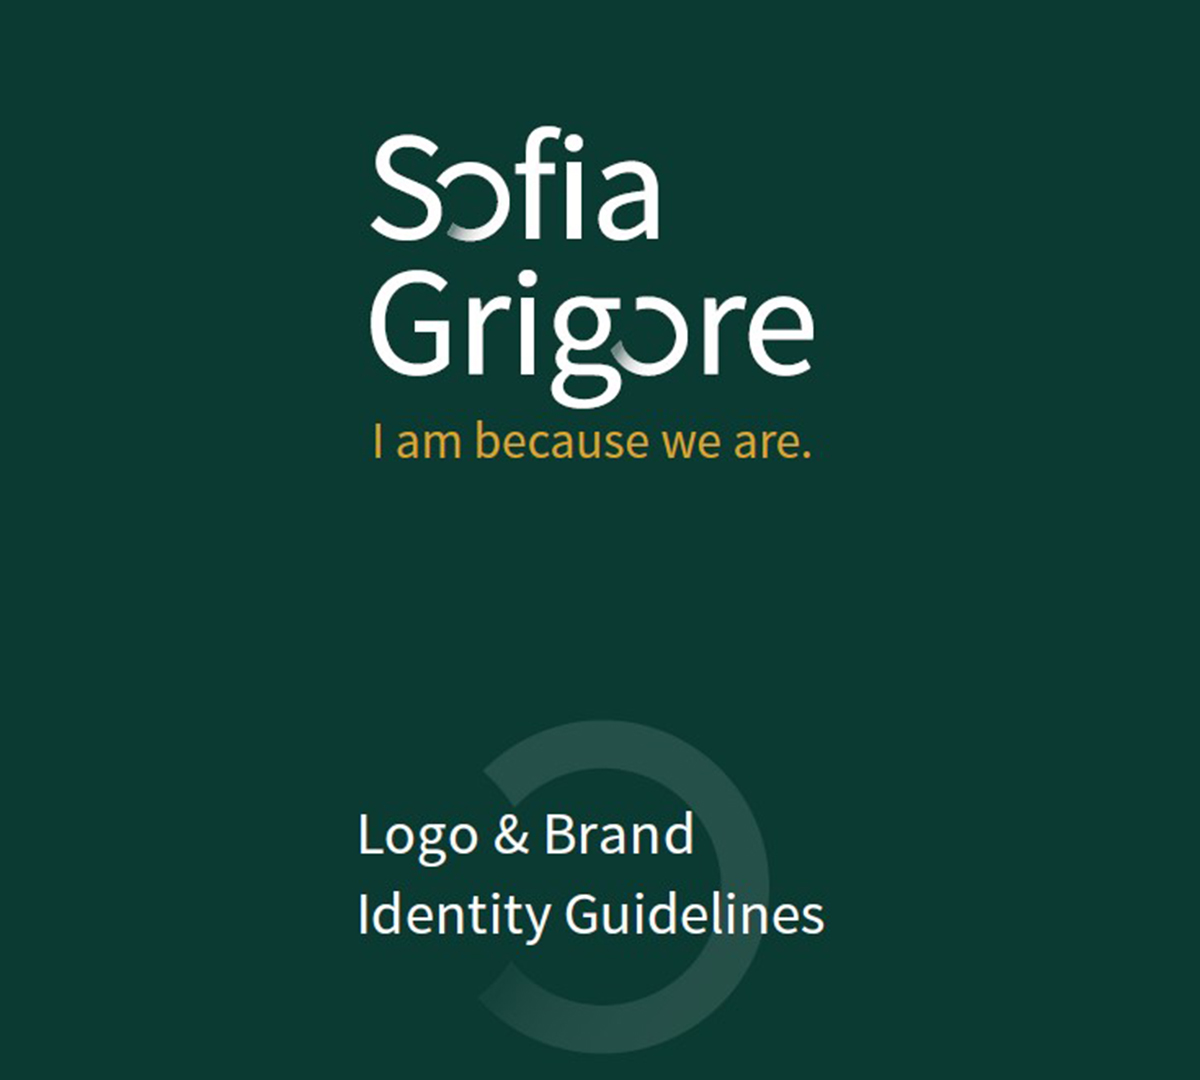 Sofia Grigore